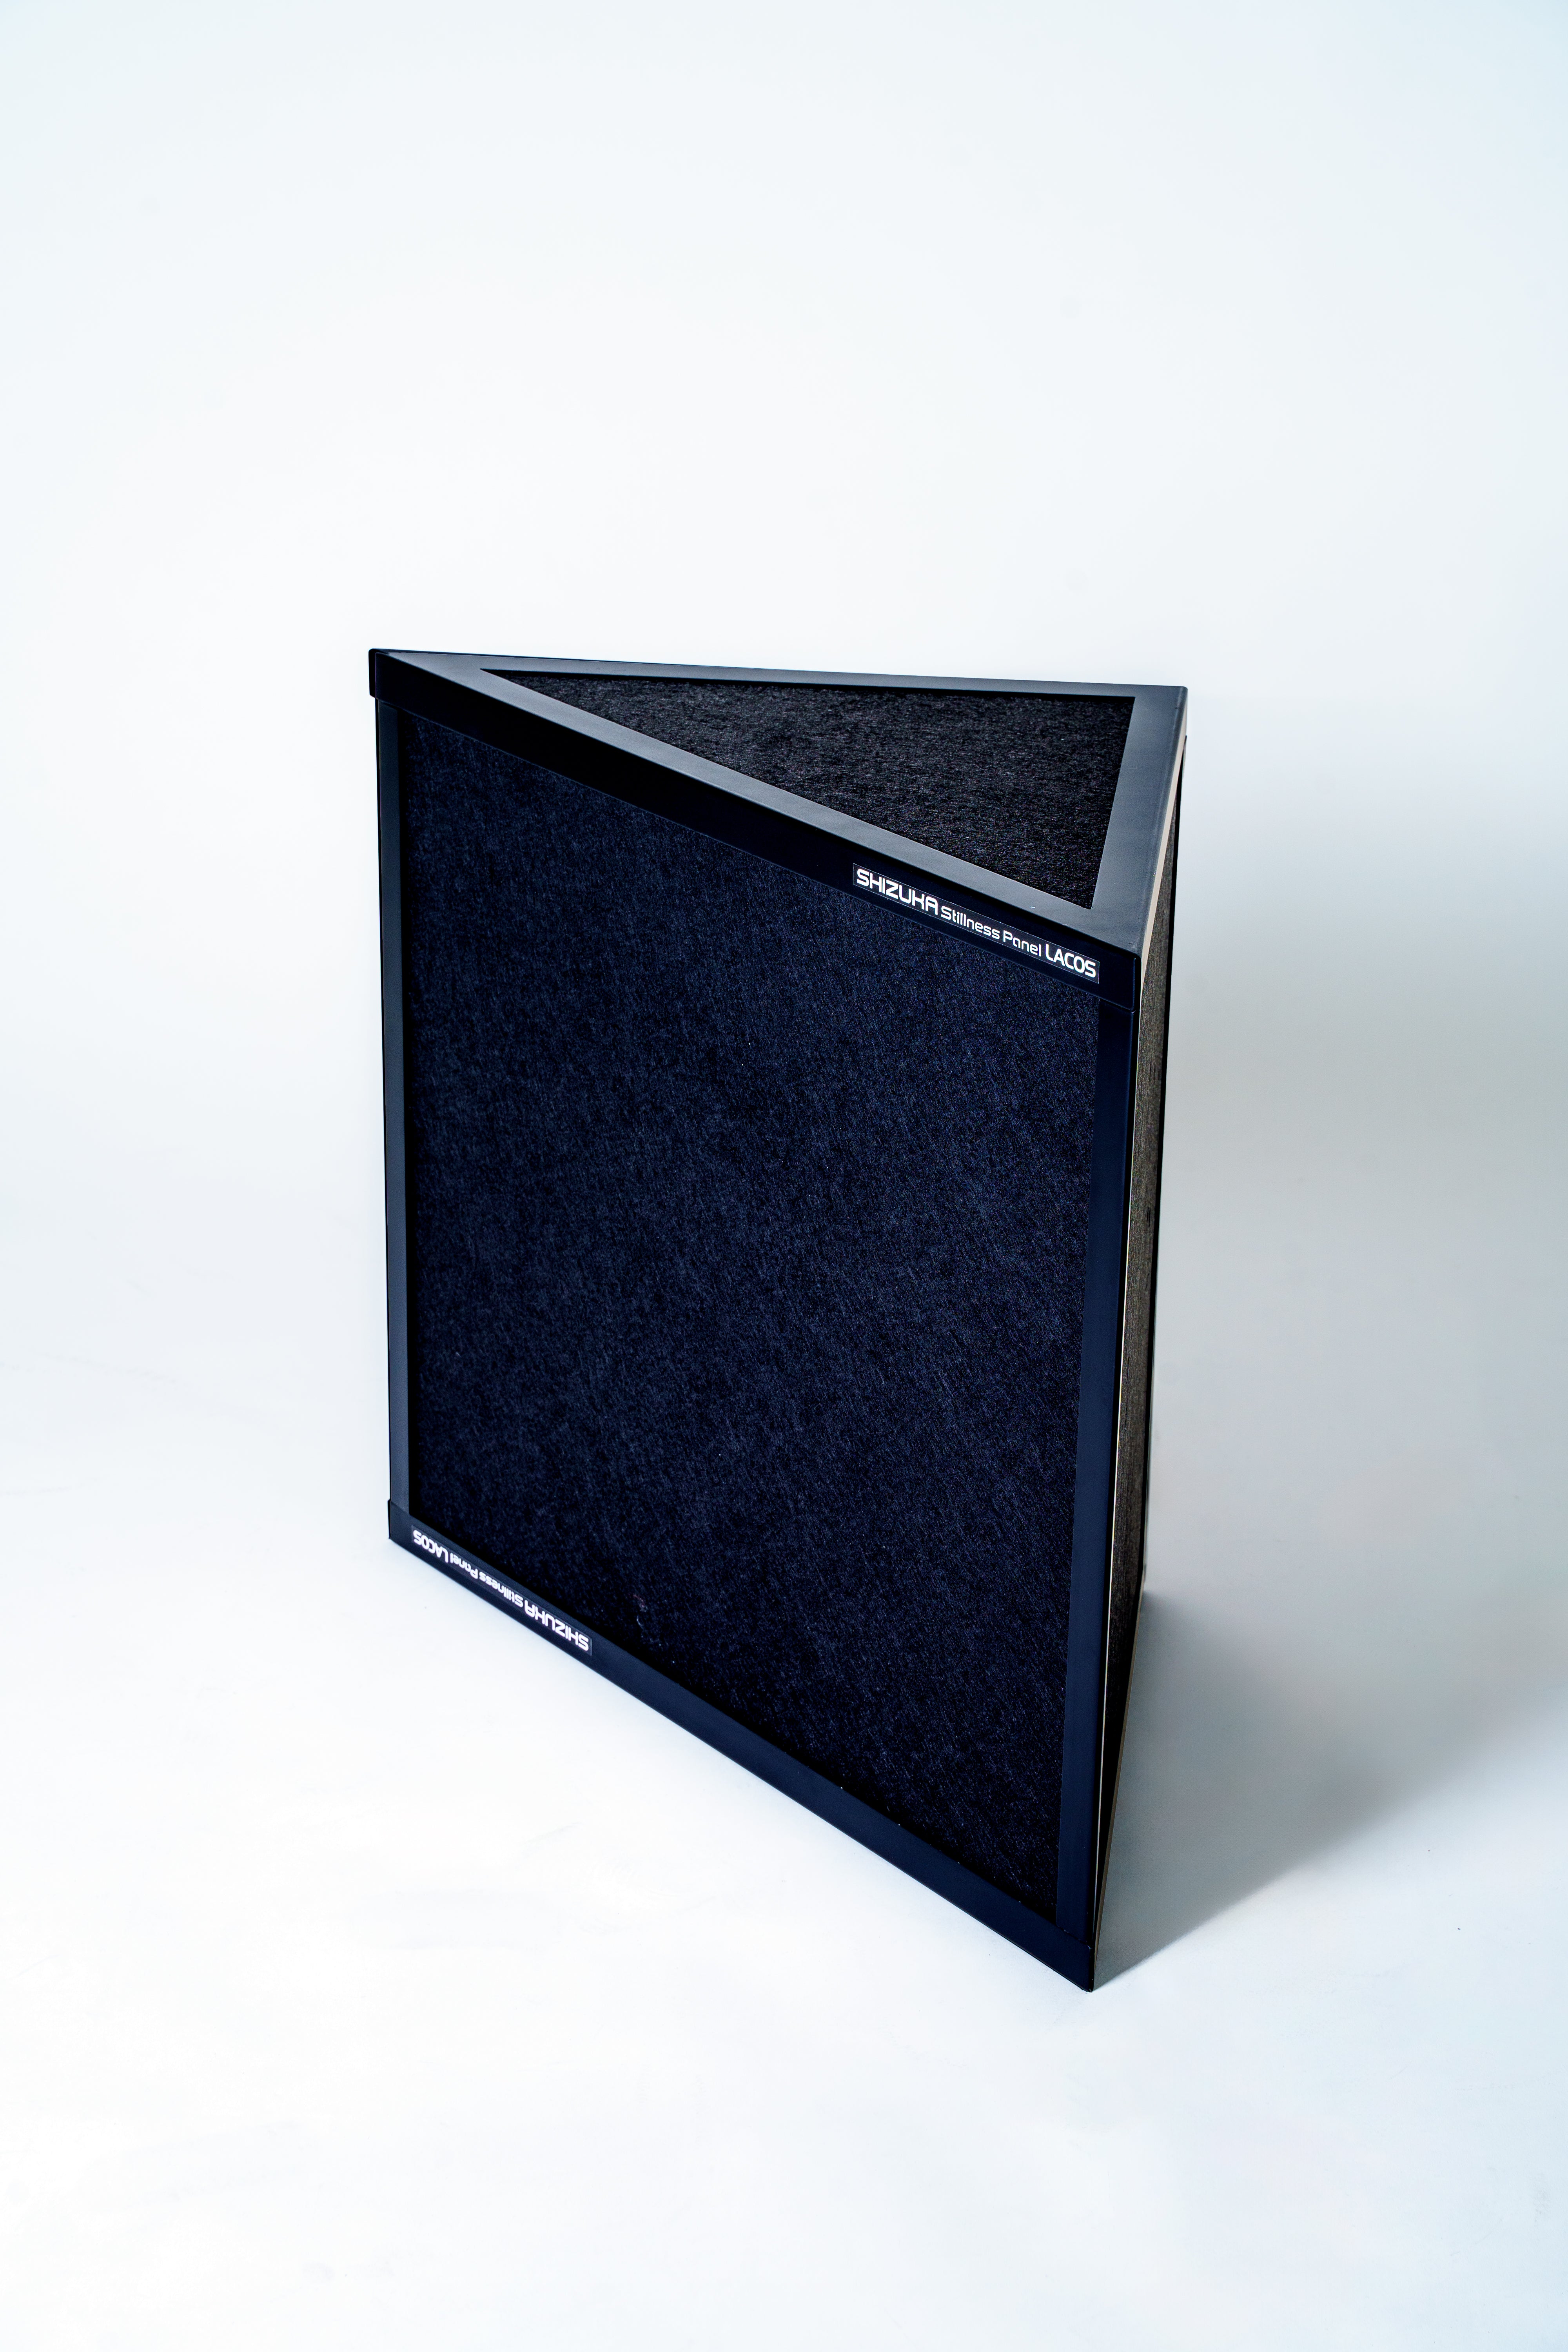 SHIZUKA Stillness Panel LACOS-500-B（BLACK 高さ500 